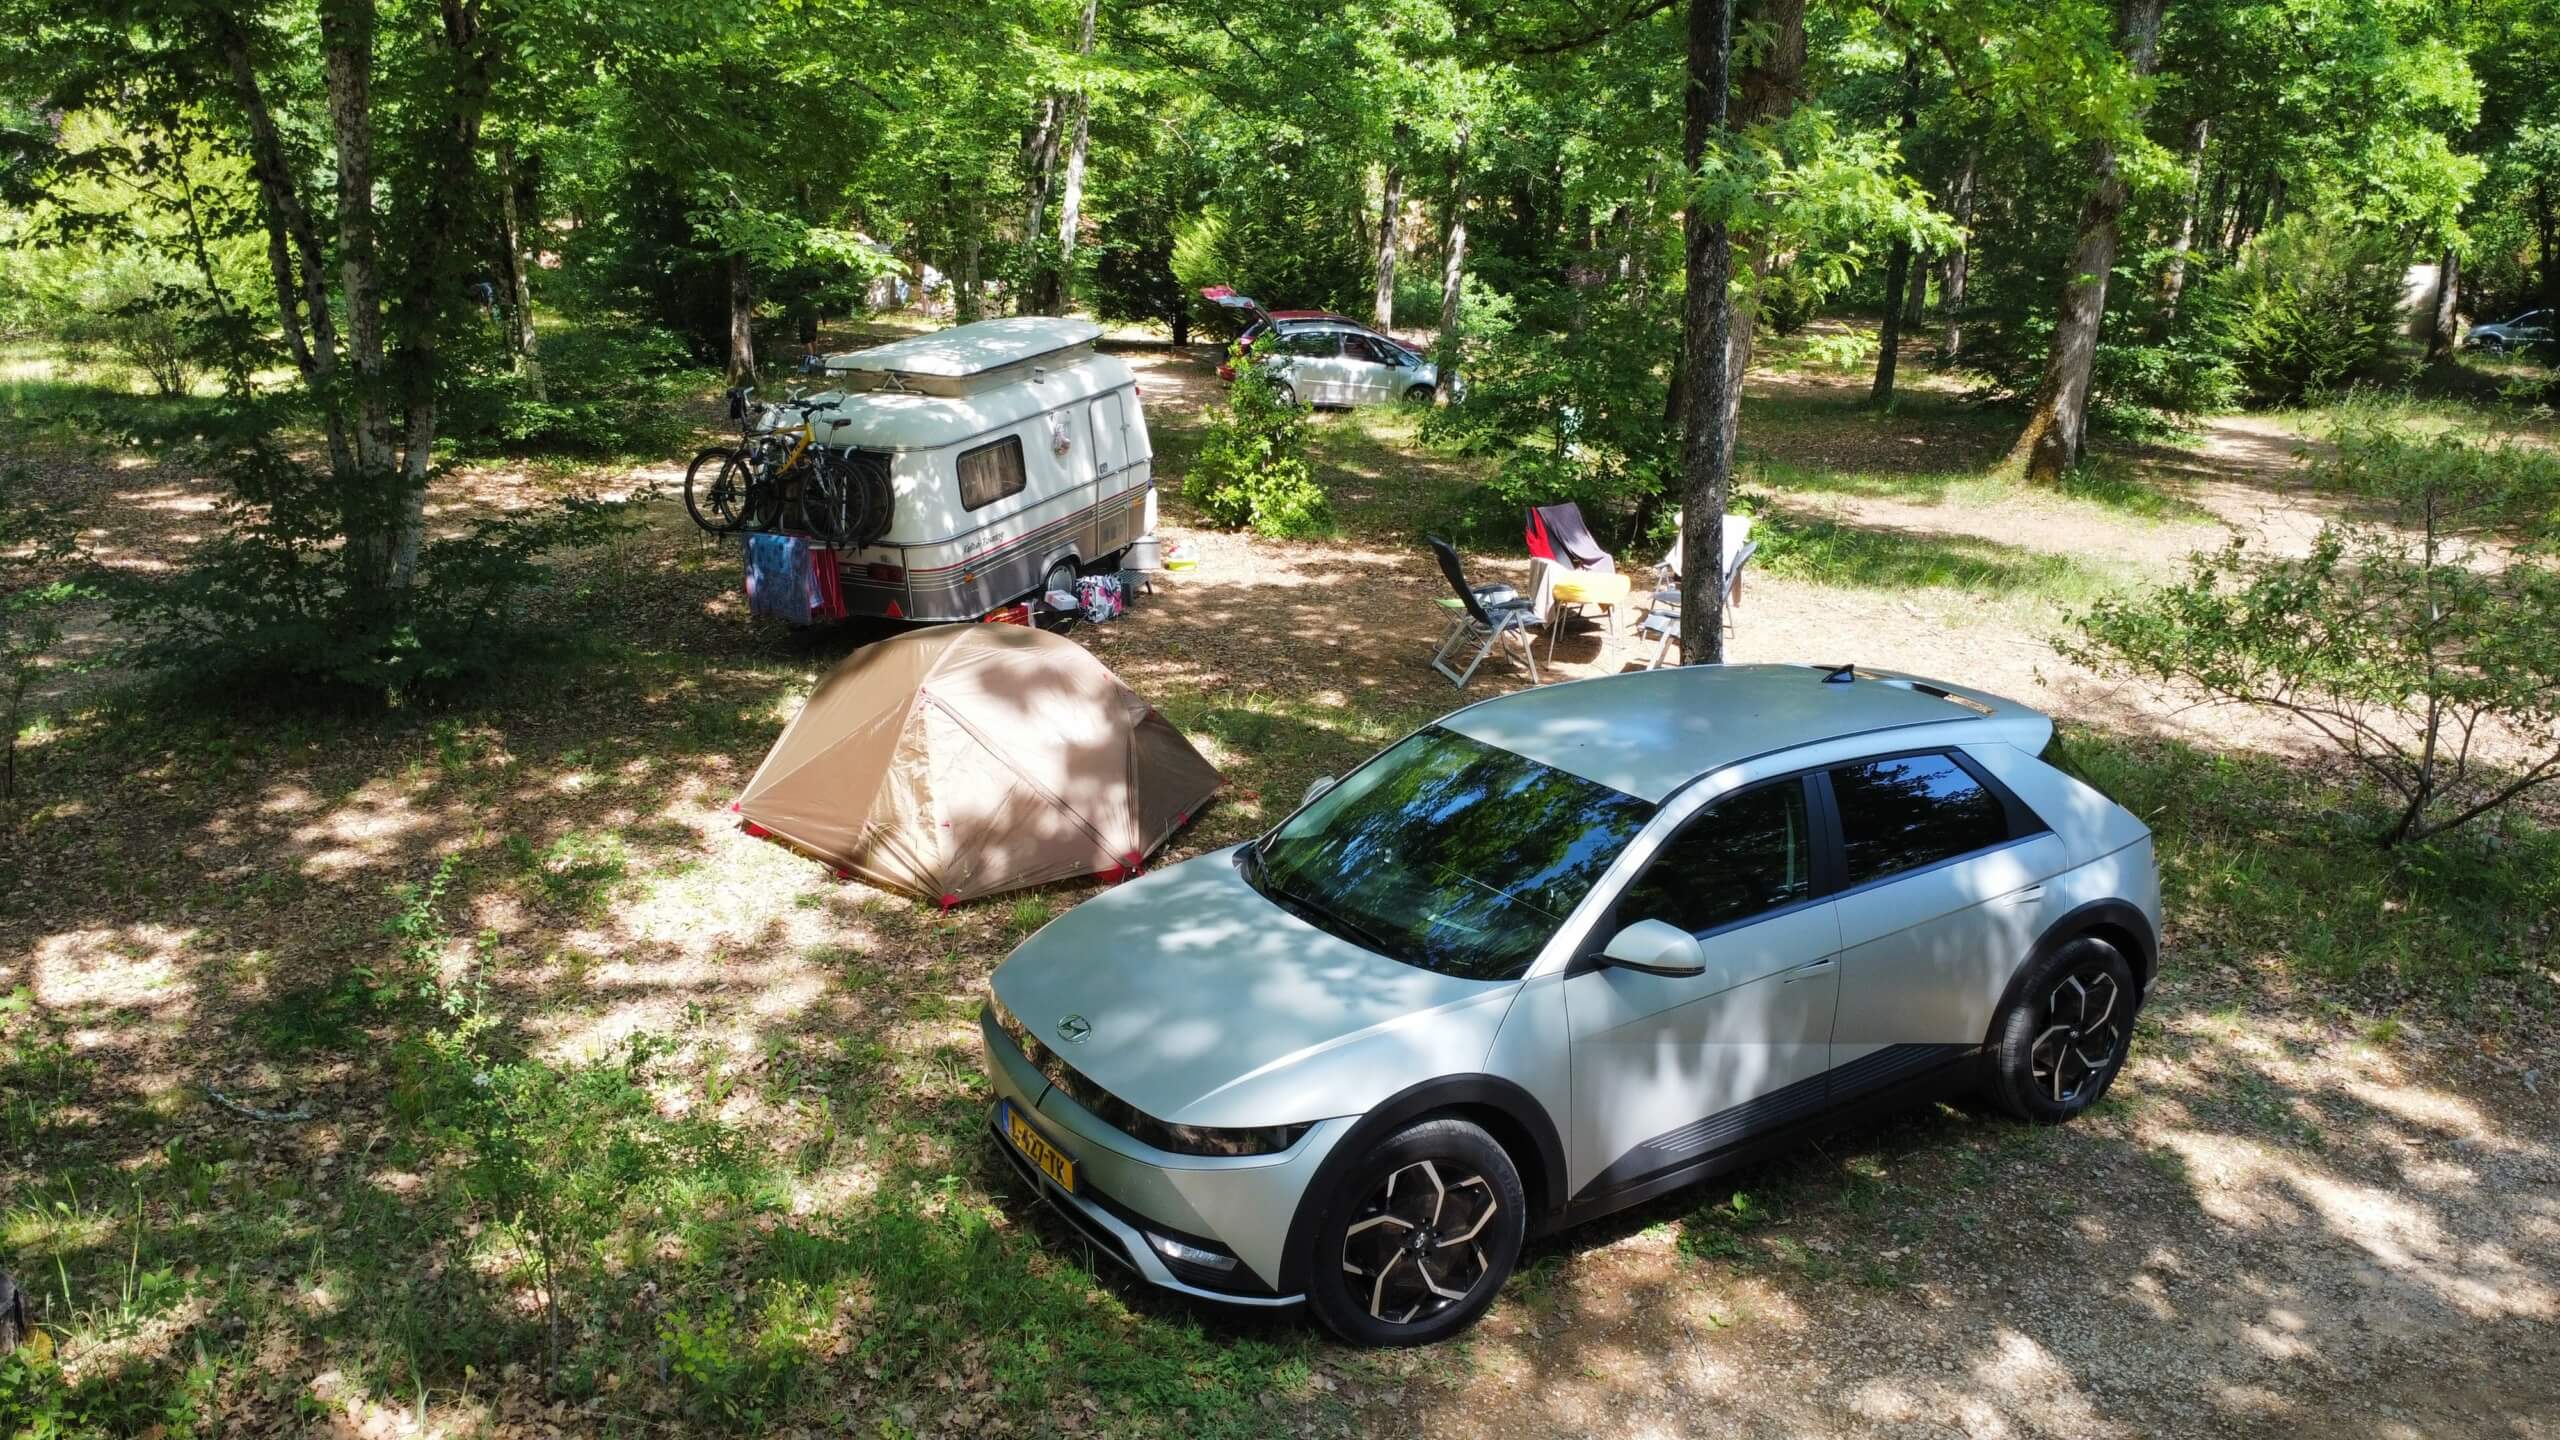 vijver Vervreemding kern Kamperen met elektrische auto én caravan - Camping met laadpaal